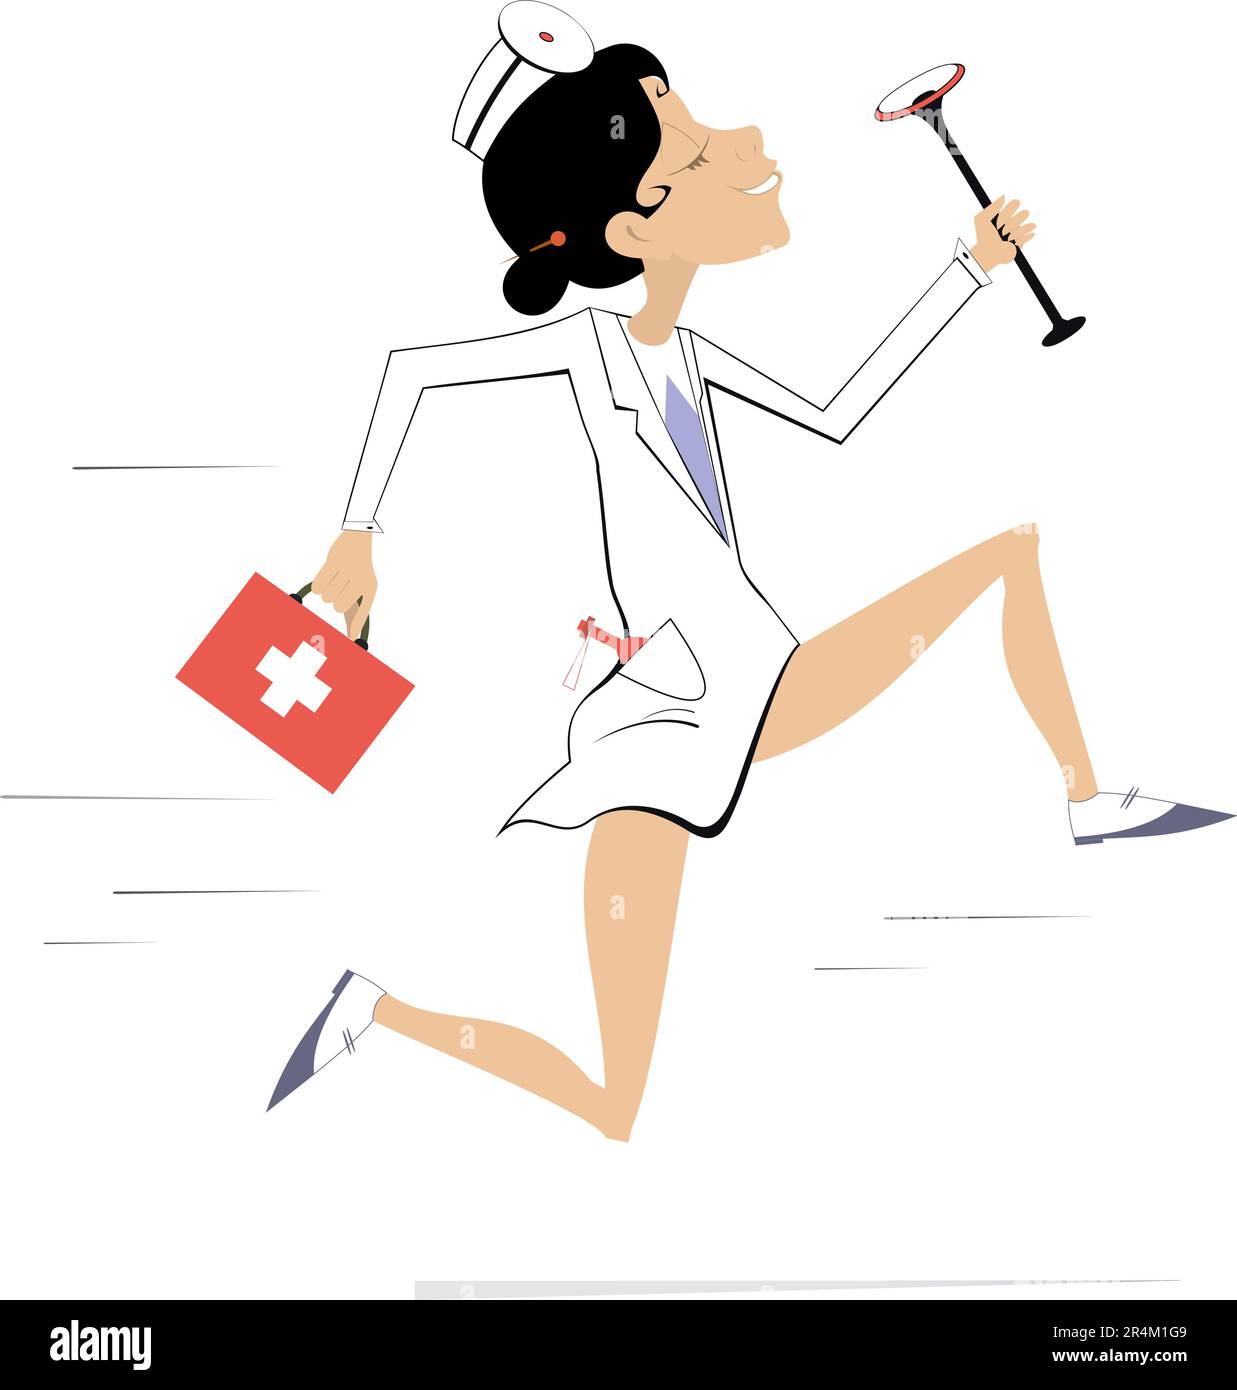 Lächelnde Ärztin rennt, um die medizinische Hilfe Illustration darzustellen. Cartoon-Eile Ärztin mit Arzttasche und Endoskop Stock Vektor